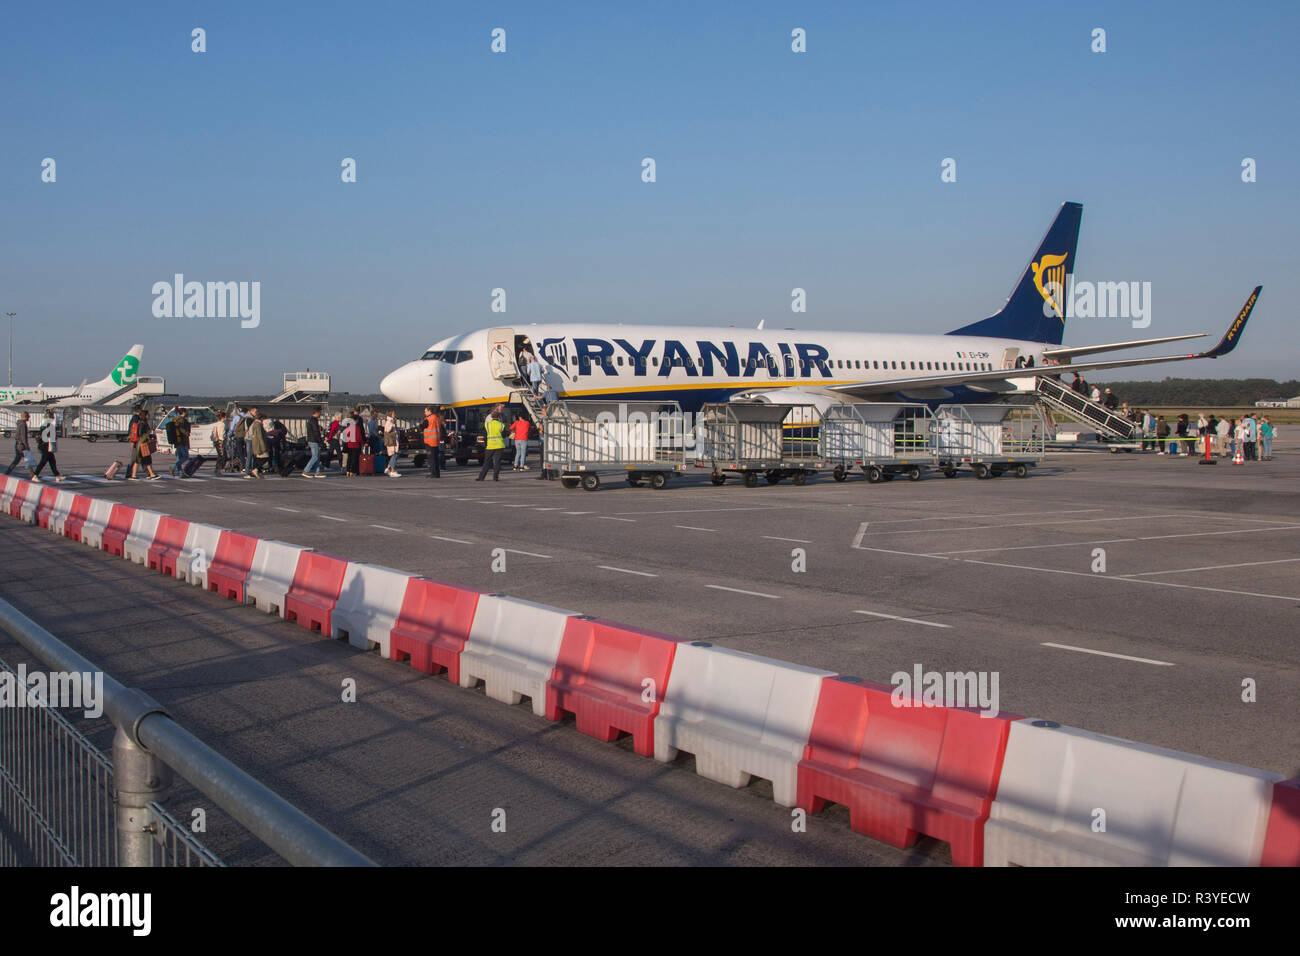 Die Fluggäste in Ryanair Boeing 737-800 Flugzeug auf dem Flughafen Eindhoven, Niederlande. Ryanair ist Europas größte Low Cost Airline mit einer einzigen Art Flotte der Boeing 737-800. Ryanair vor kurzem geändert Es ist Handgepäck Politik nur eine kleine für sich. Stockfoto